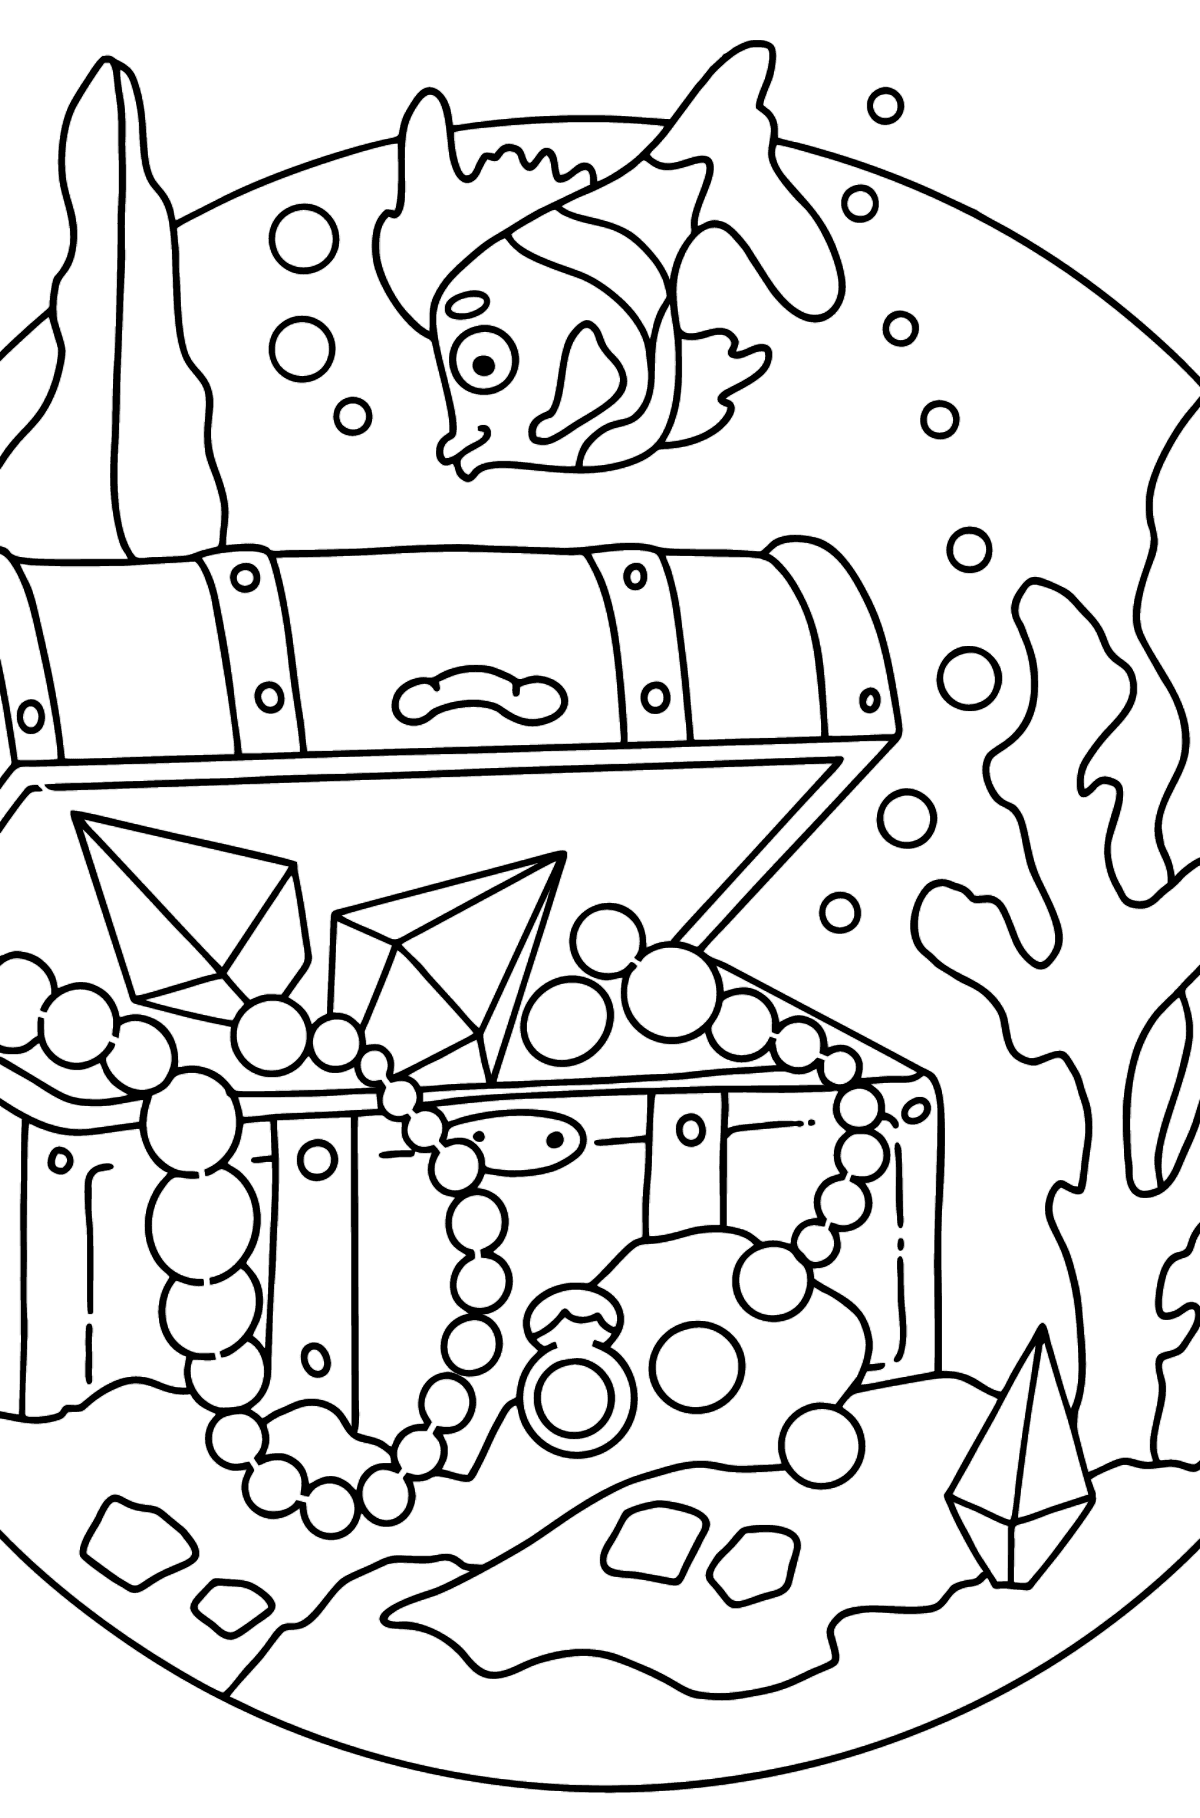 Desenho de peixe e tesouro para colorir (difícil) - Imagens para Colorir para Crianças